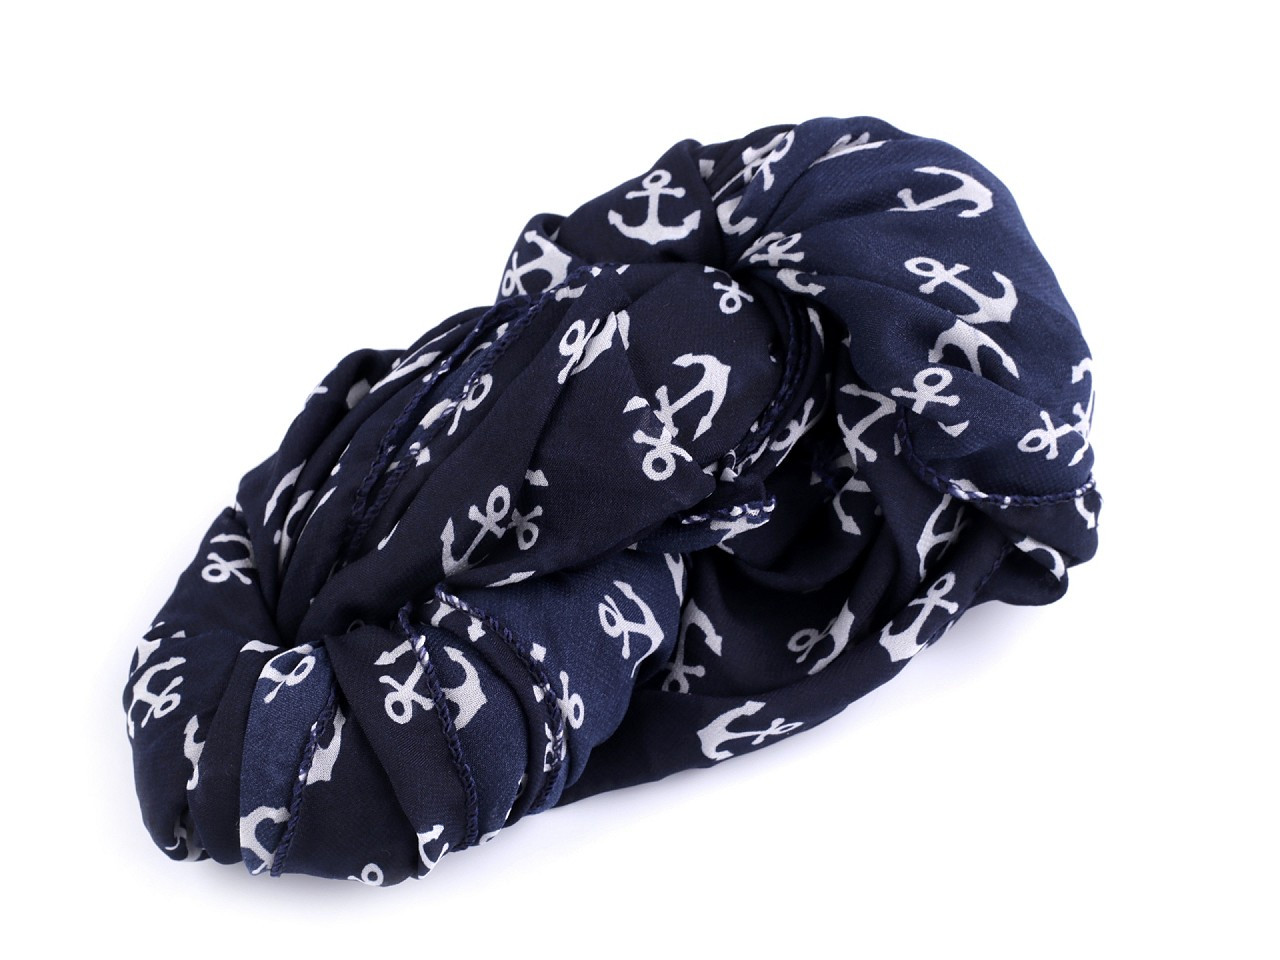 Letní šátek / šála kotva 80x170 cm, barva 6 modrá tmavá kotva